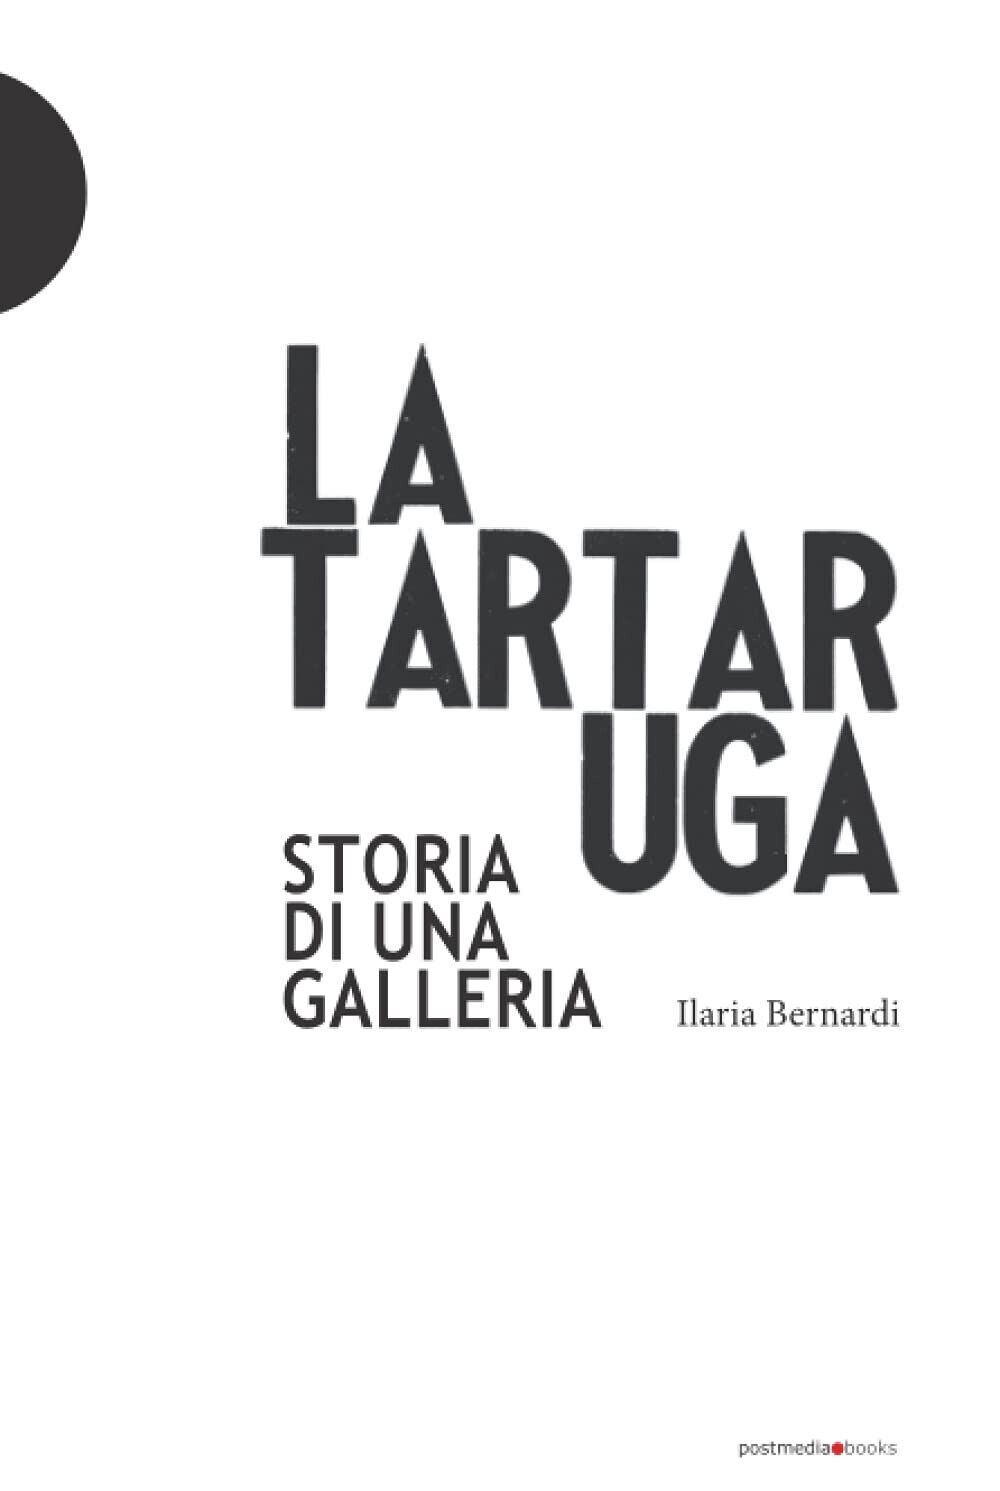 La Tartaruga. Storia di una galleria - Ilaria Bernardi - Postmedia books, 2018 libro usato